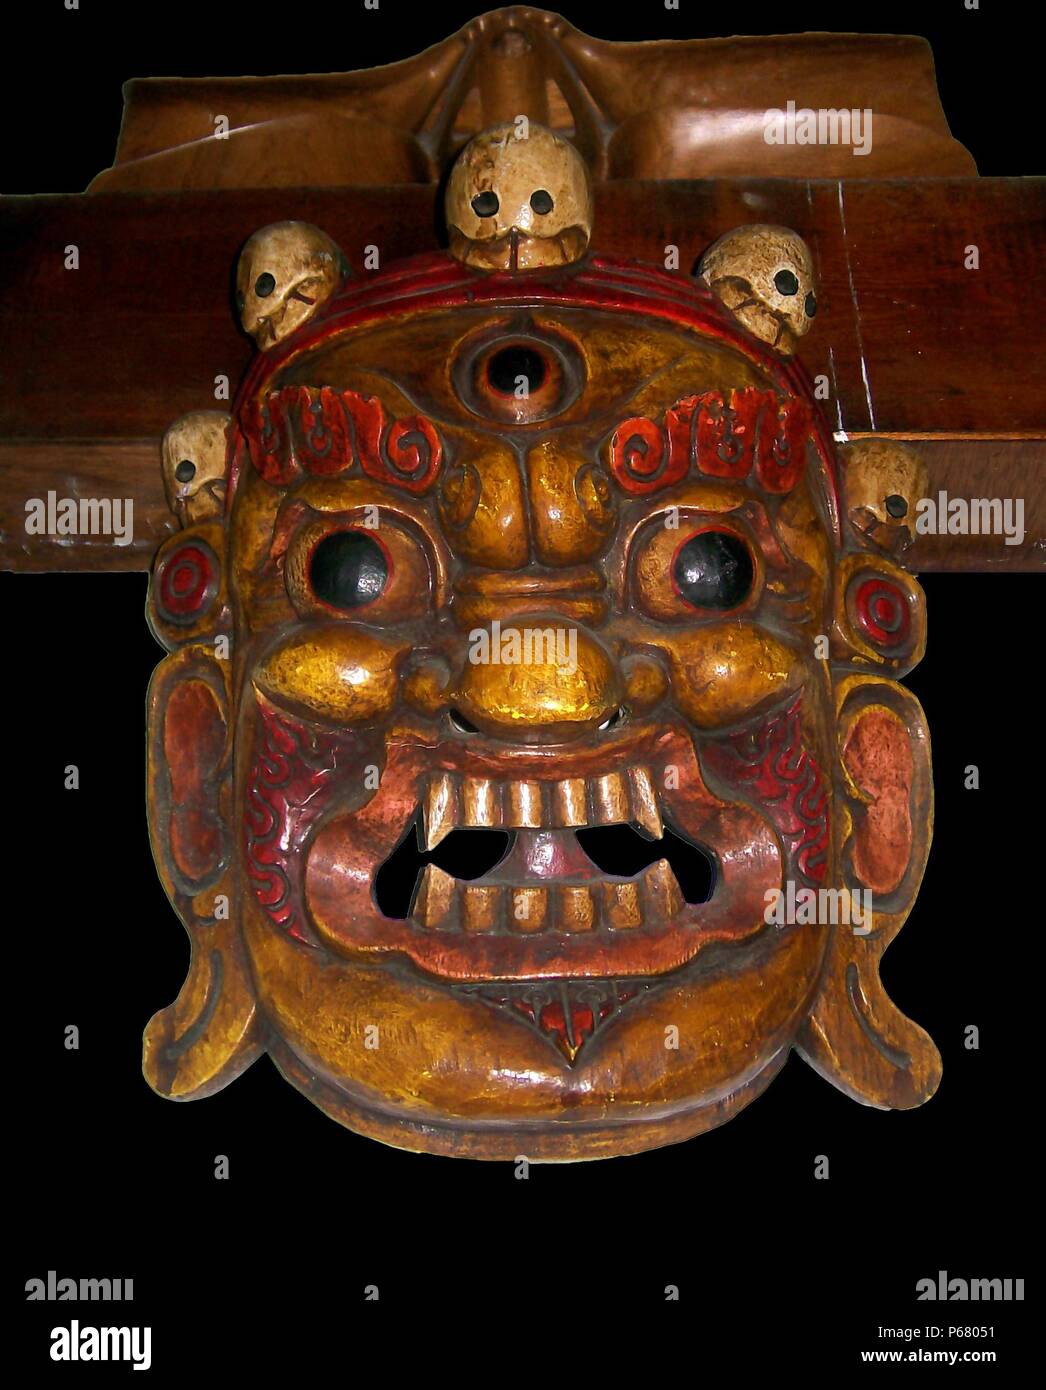 L'ancien Tibet : Mahakala masque, la fin de la dynastie des Qing ; 1800 - 1912 AD, de Lhasa, Tibet. Une divinité protectrice avec une couronne de cinq crânes, les cinq sagesses. Le bois peint. Troisième œil sur le front. Banque D'Images